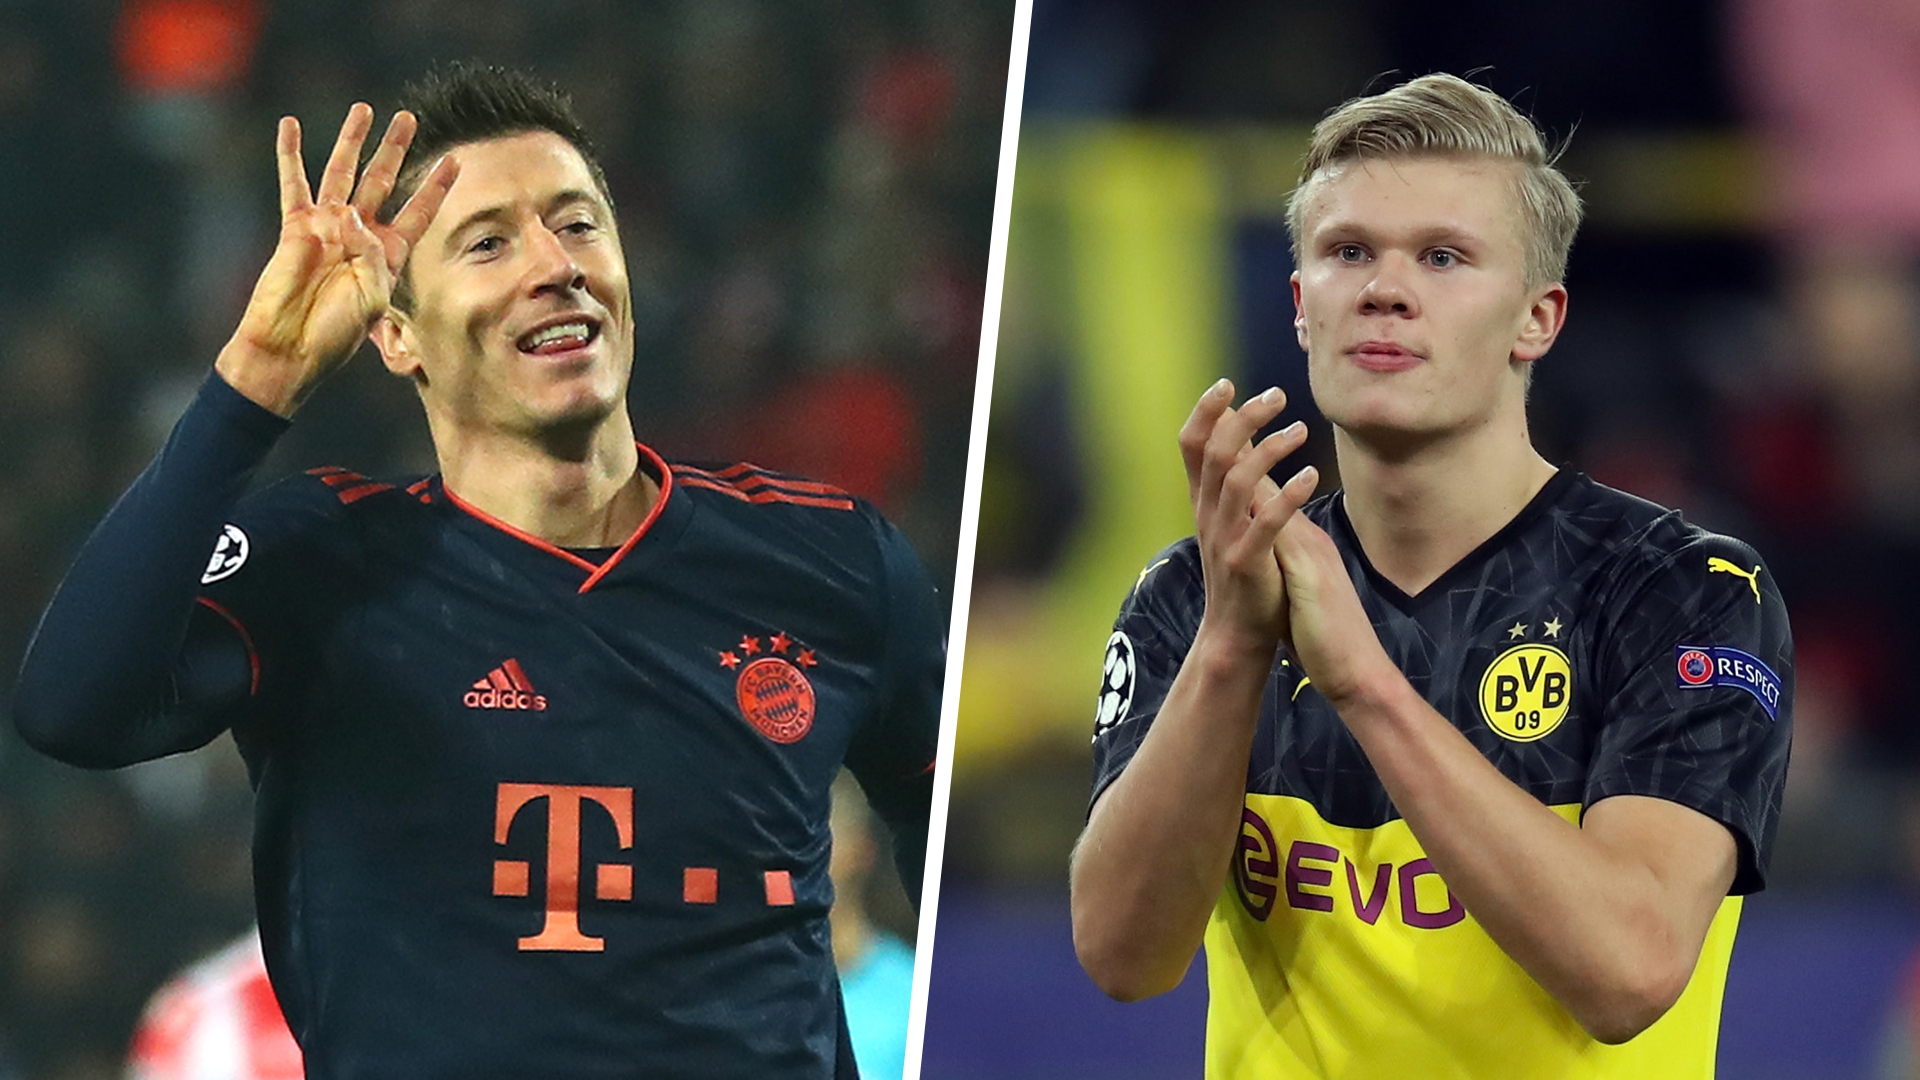 tavle Der er en tendens længst Champions League top scorers 2019-20: Haaland & Lewandowski lead the way |  Goal.com